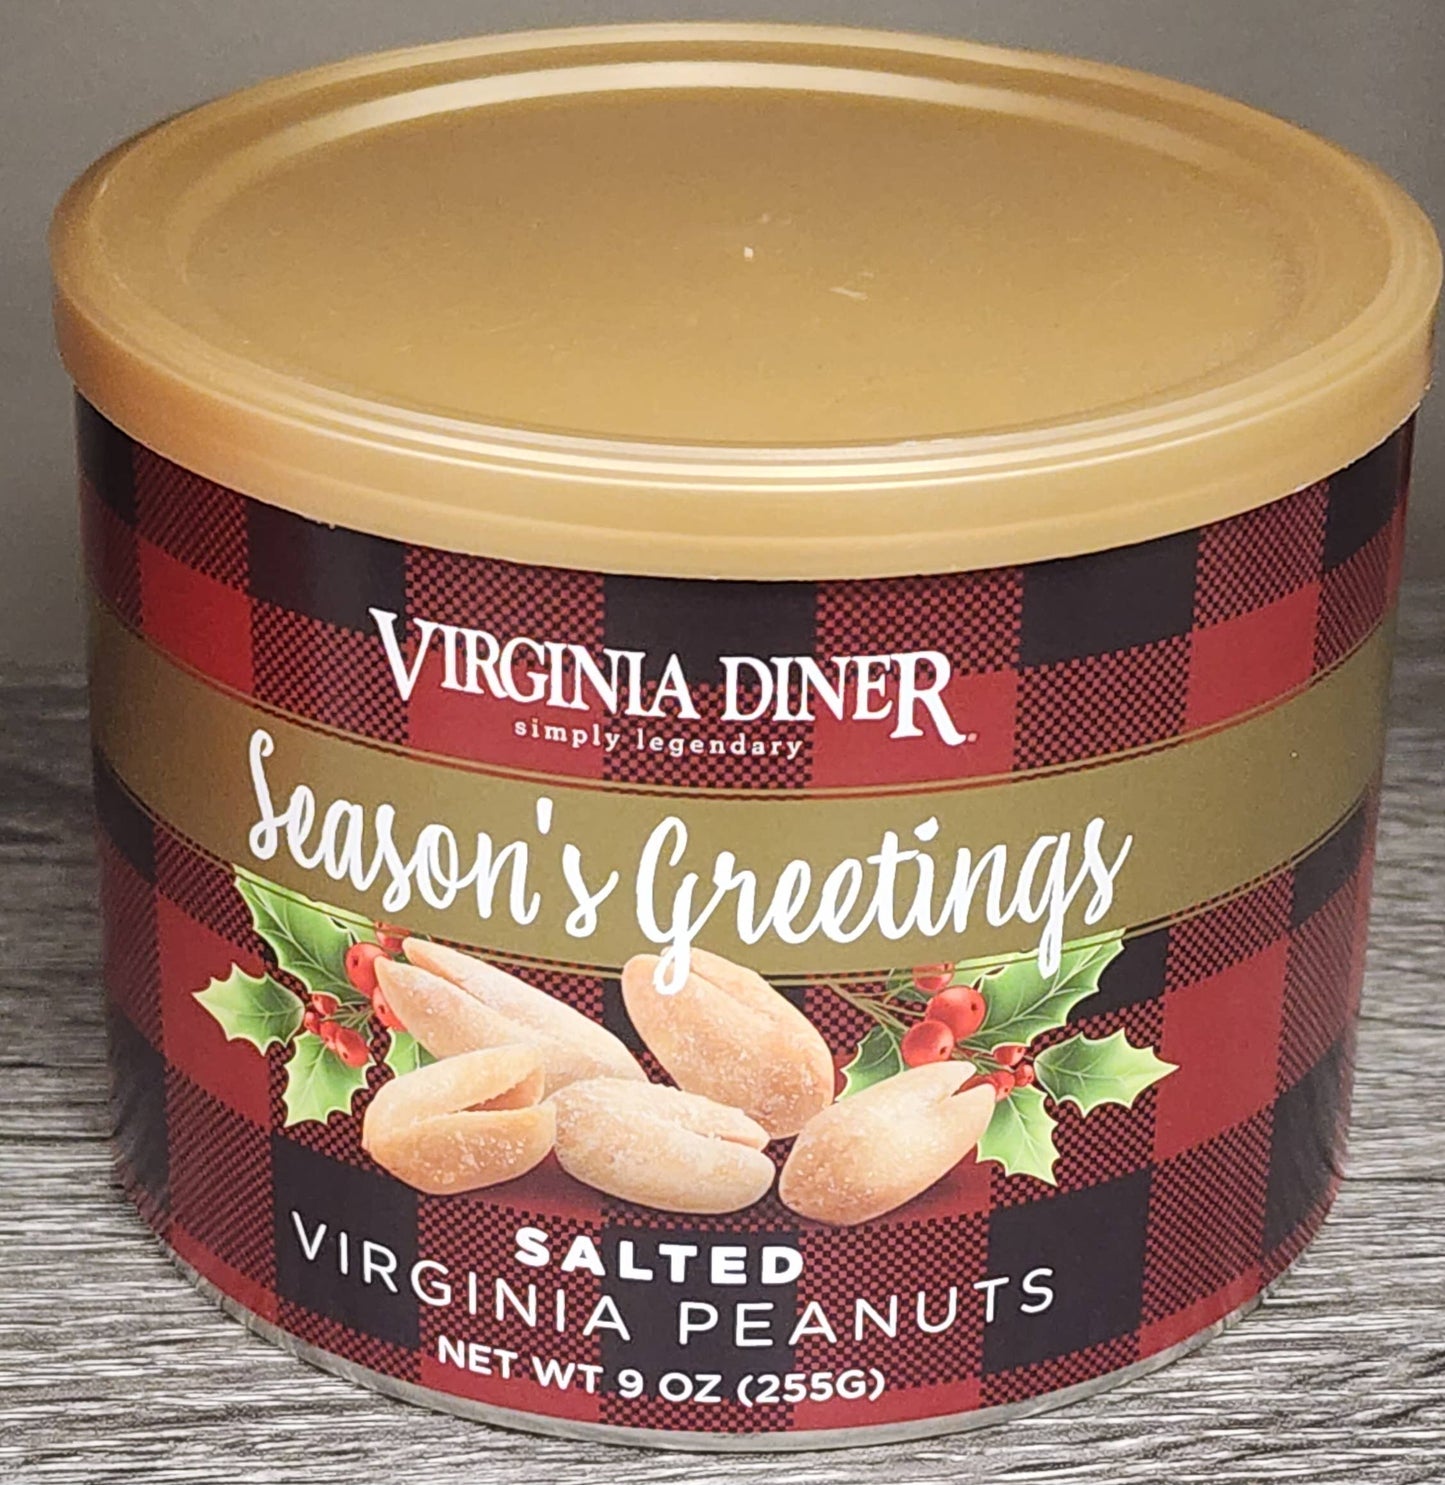 Virginia Diner - Seasons Greetings Salted Virginia Peanuts - 9oz